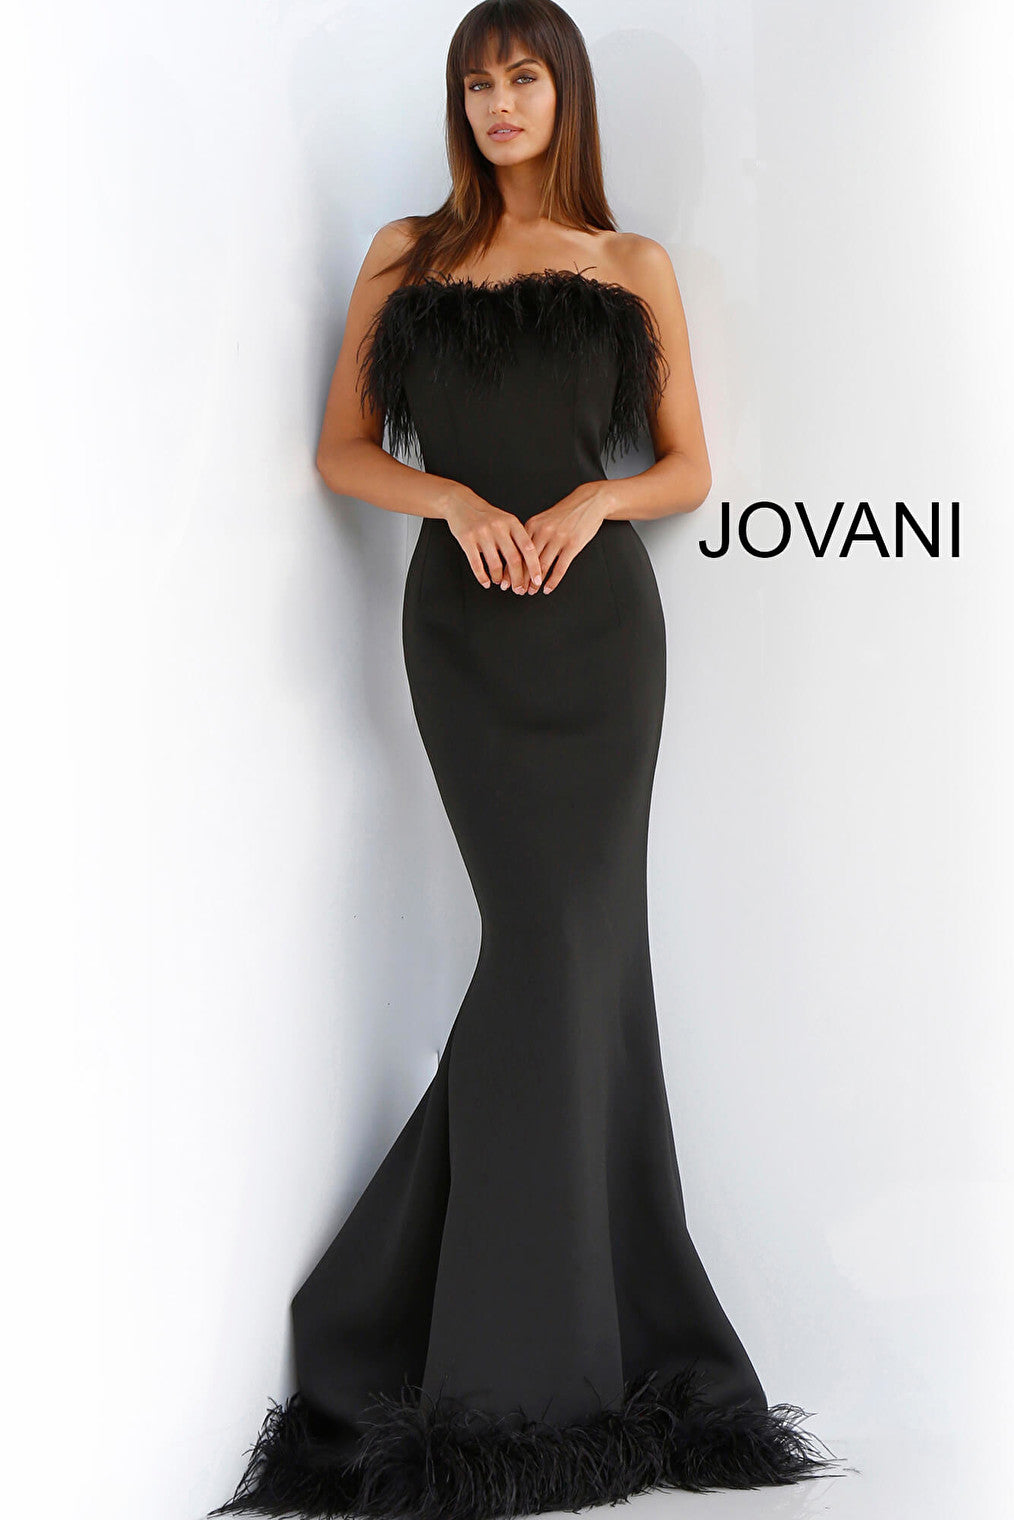 Jovani black mermaid gown 63891